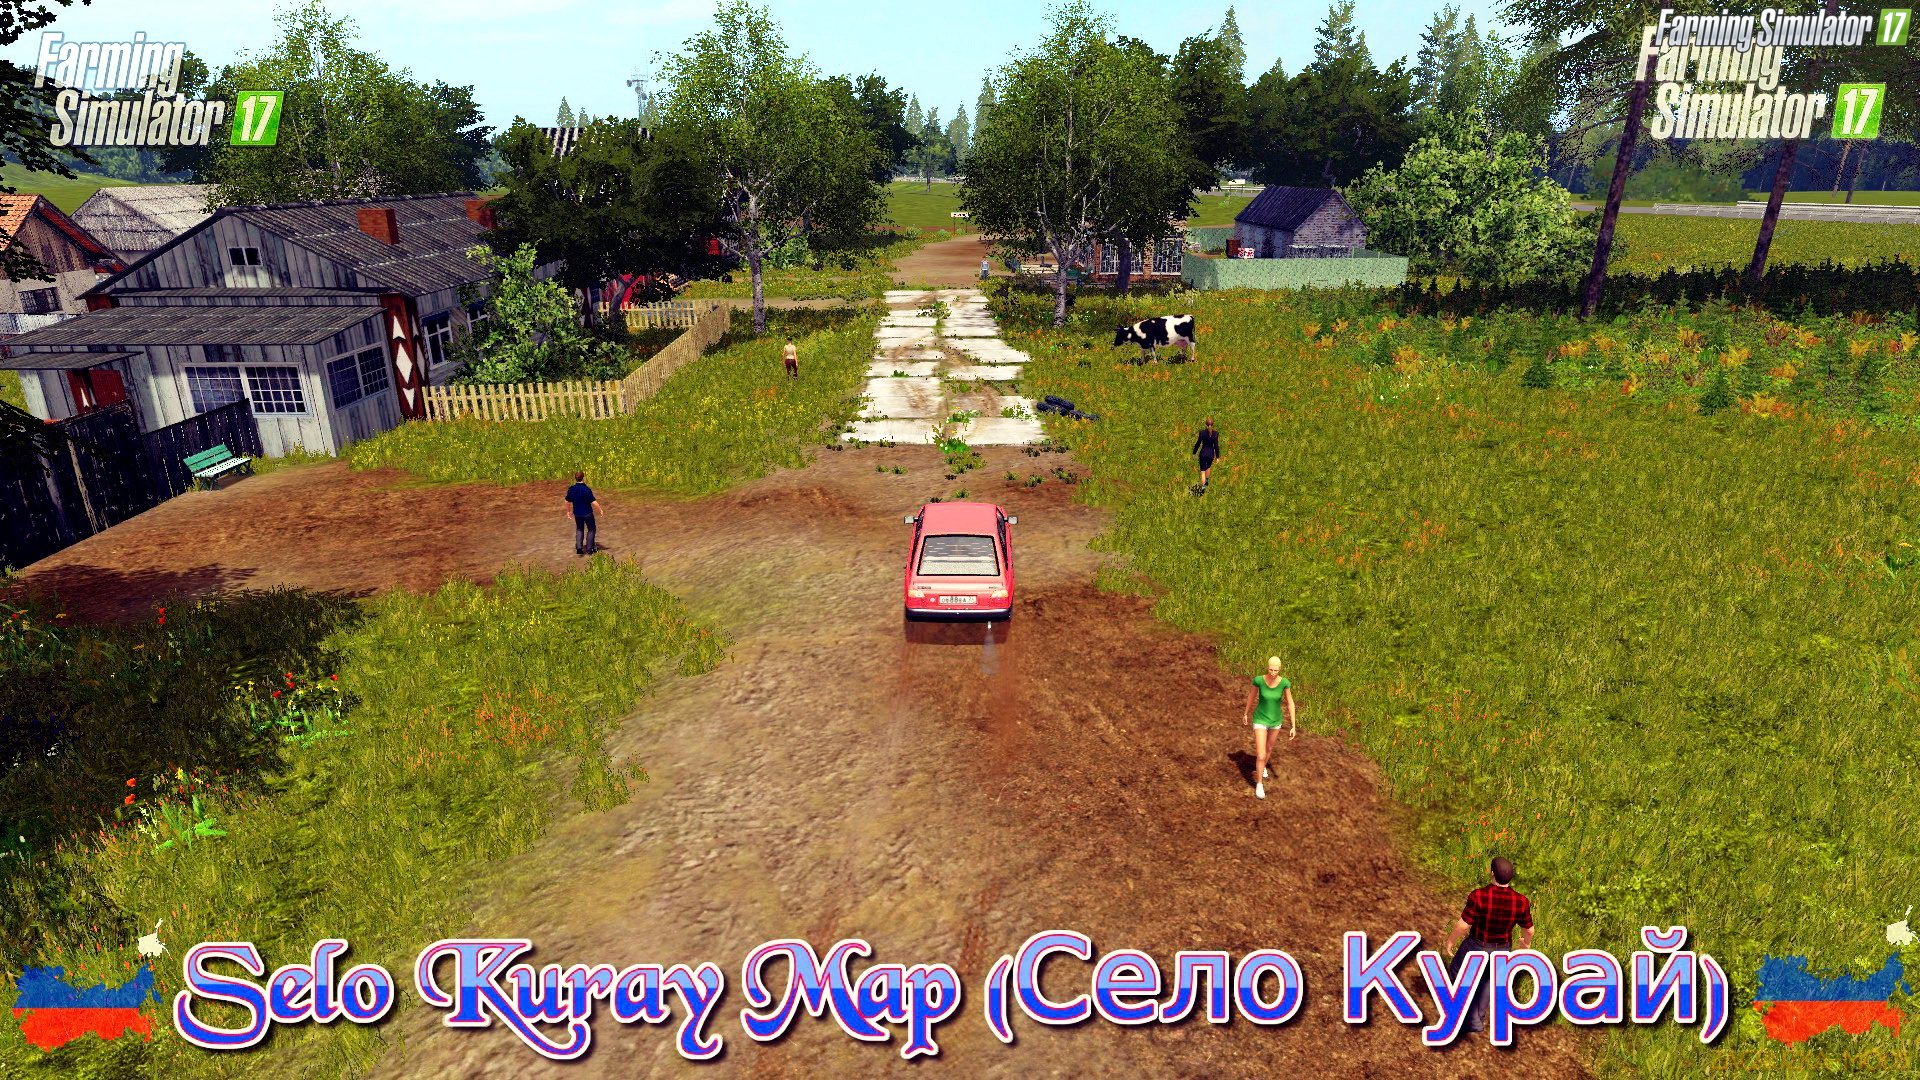 Selo Kuray Map (Село Курай) v1.6.2 for FS17